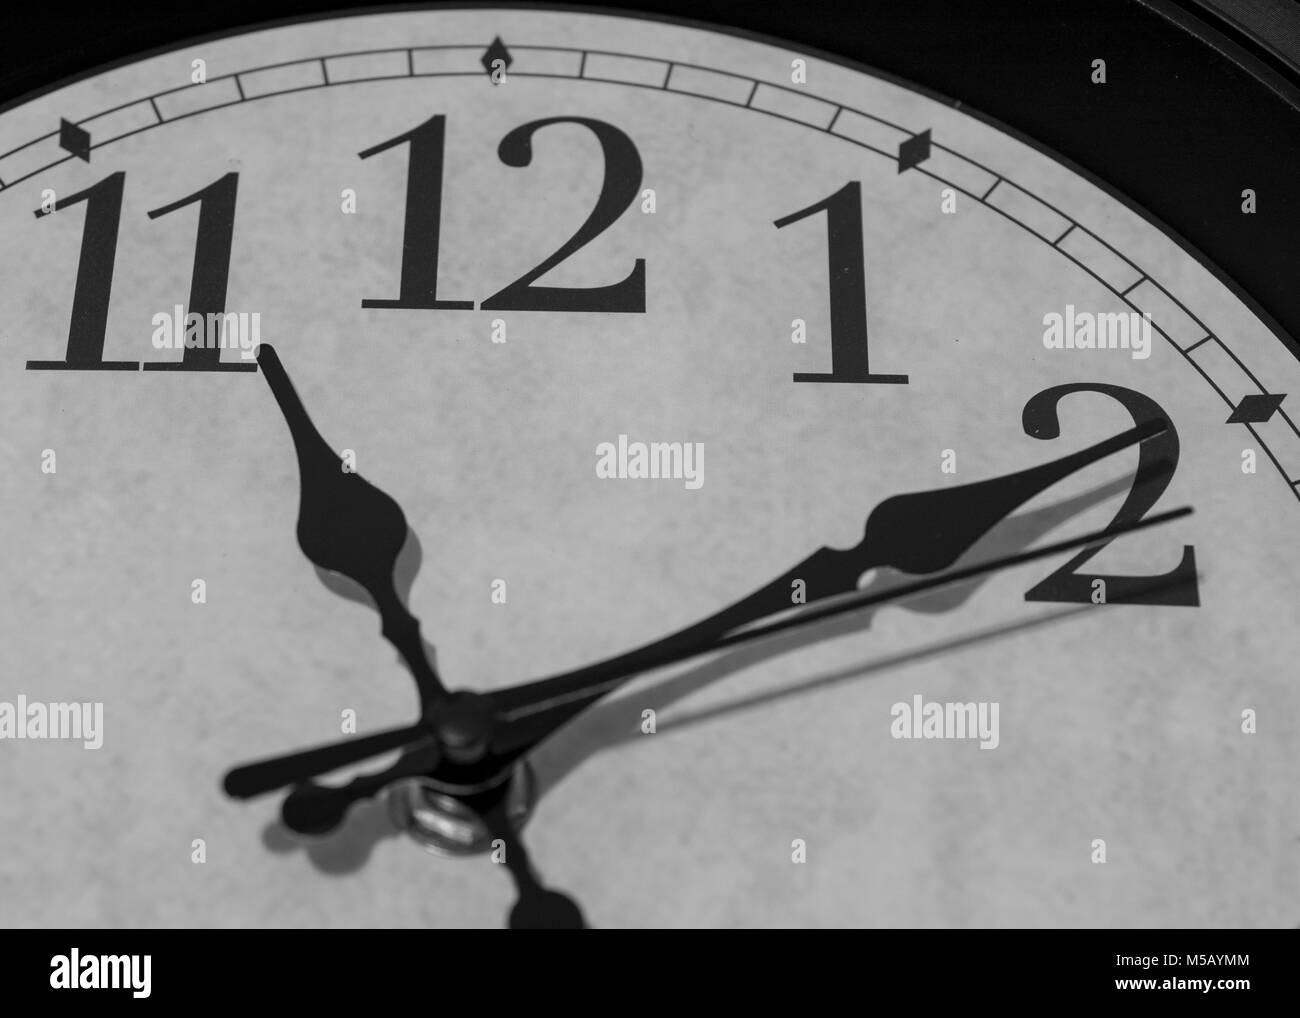 Gros plan sur les pointeurs d'une horloge marquant dix minutes après 11 heures - le rendu noir et blanc Banque D'Images